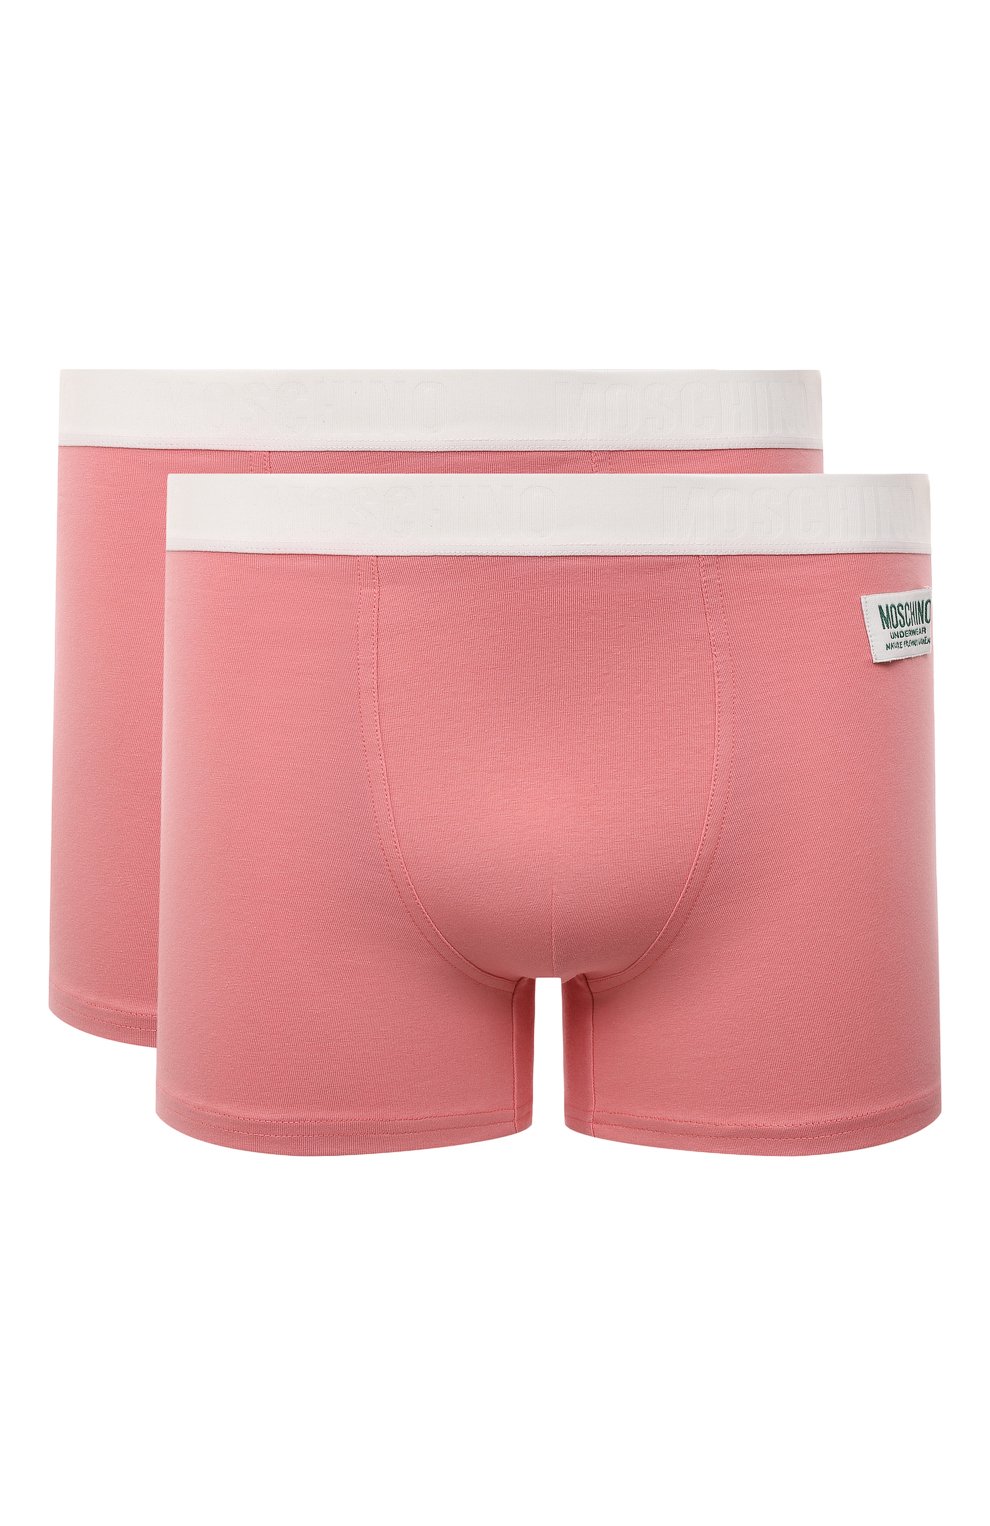 Мужские розовые комплект из двух боксеров MOSCHINO купить в  интернет-магазине ЦУМ, арт. A4780/8134